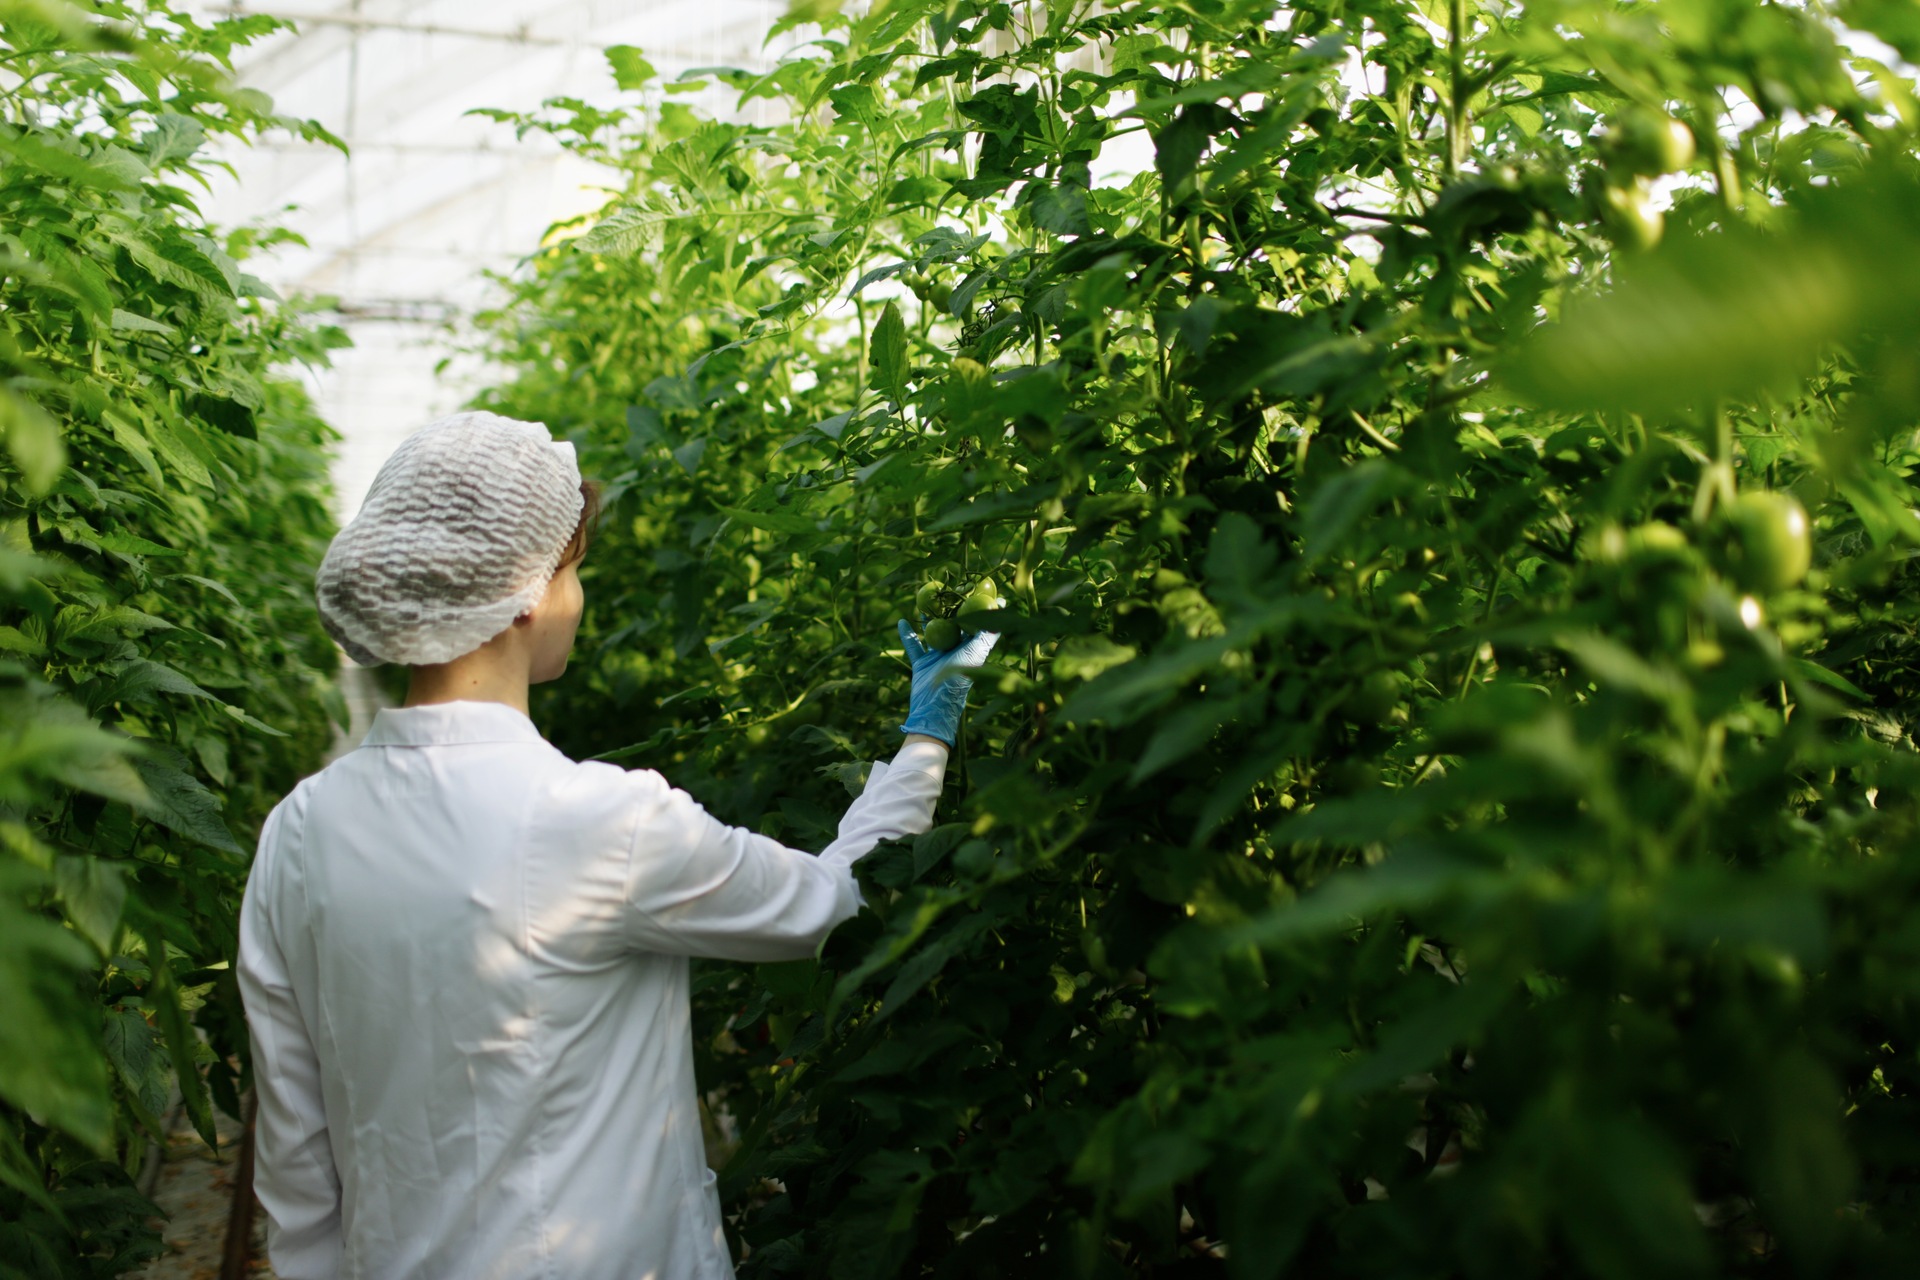 Ingegneria Genetica: le biotecnologie potrebbero contribuire a un'agricoltura e a un'industria alimentare sostenibili ed efficienti in termini di risorse